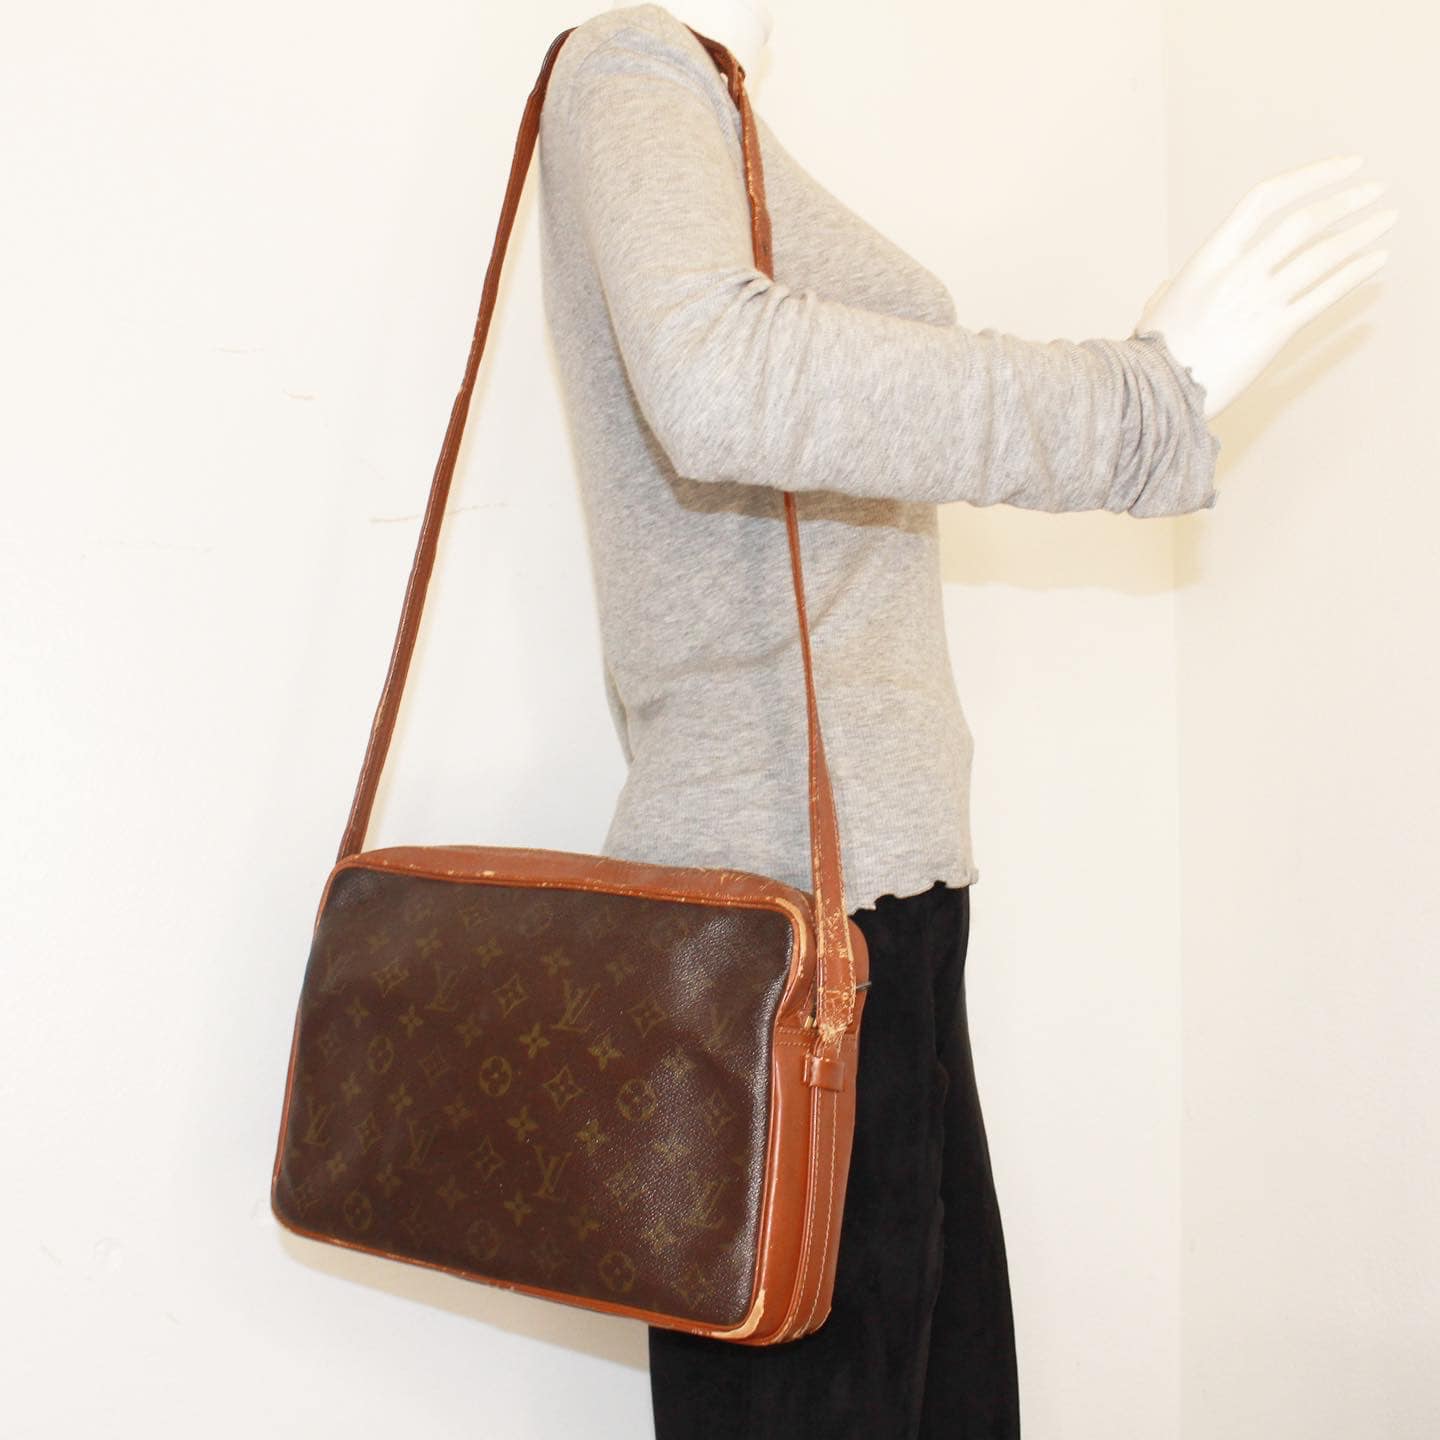 Louis Vuitton 'Bandouliere Bag' in Monogram Canvas - Louis Vuitton